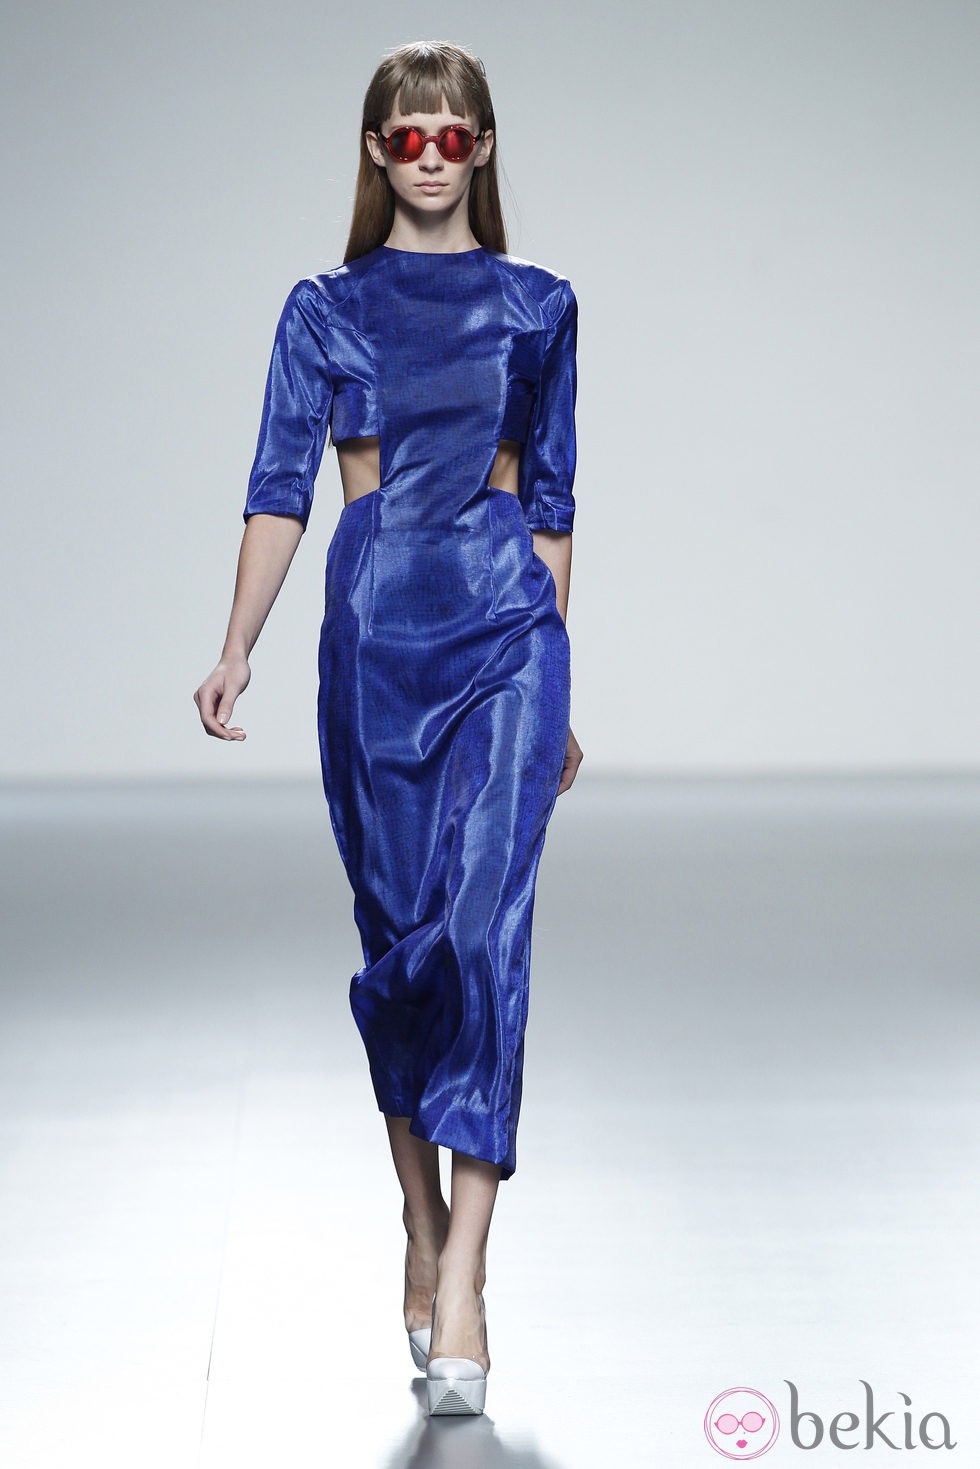 Vestido azul eléctrico de la colección primavera/verano 2014 de Martin Lamothe en Madrid Fashion Week